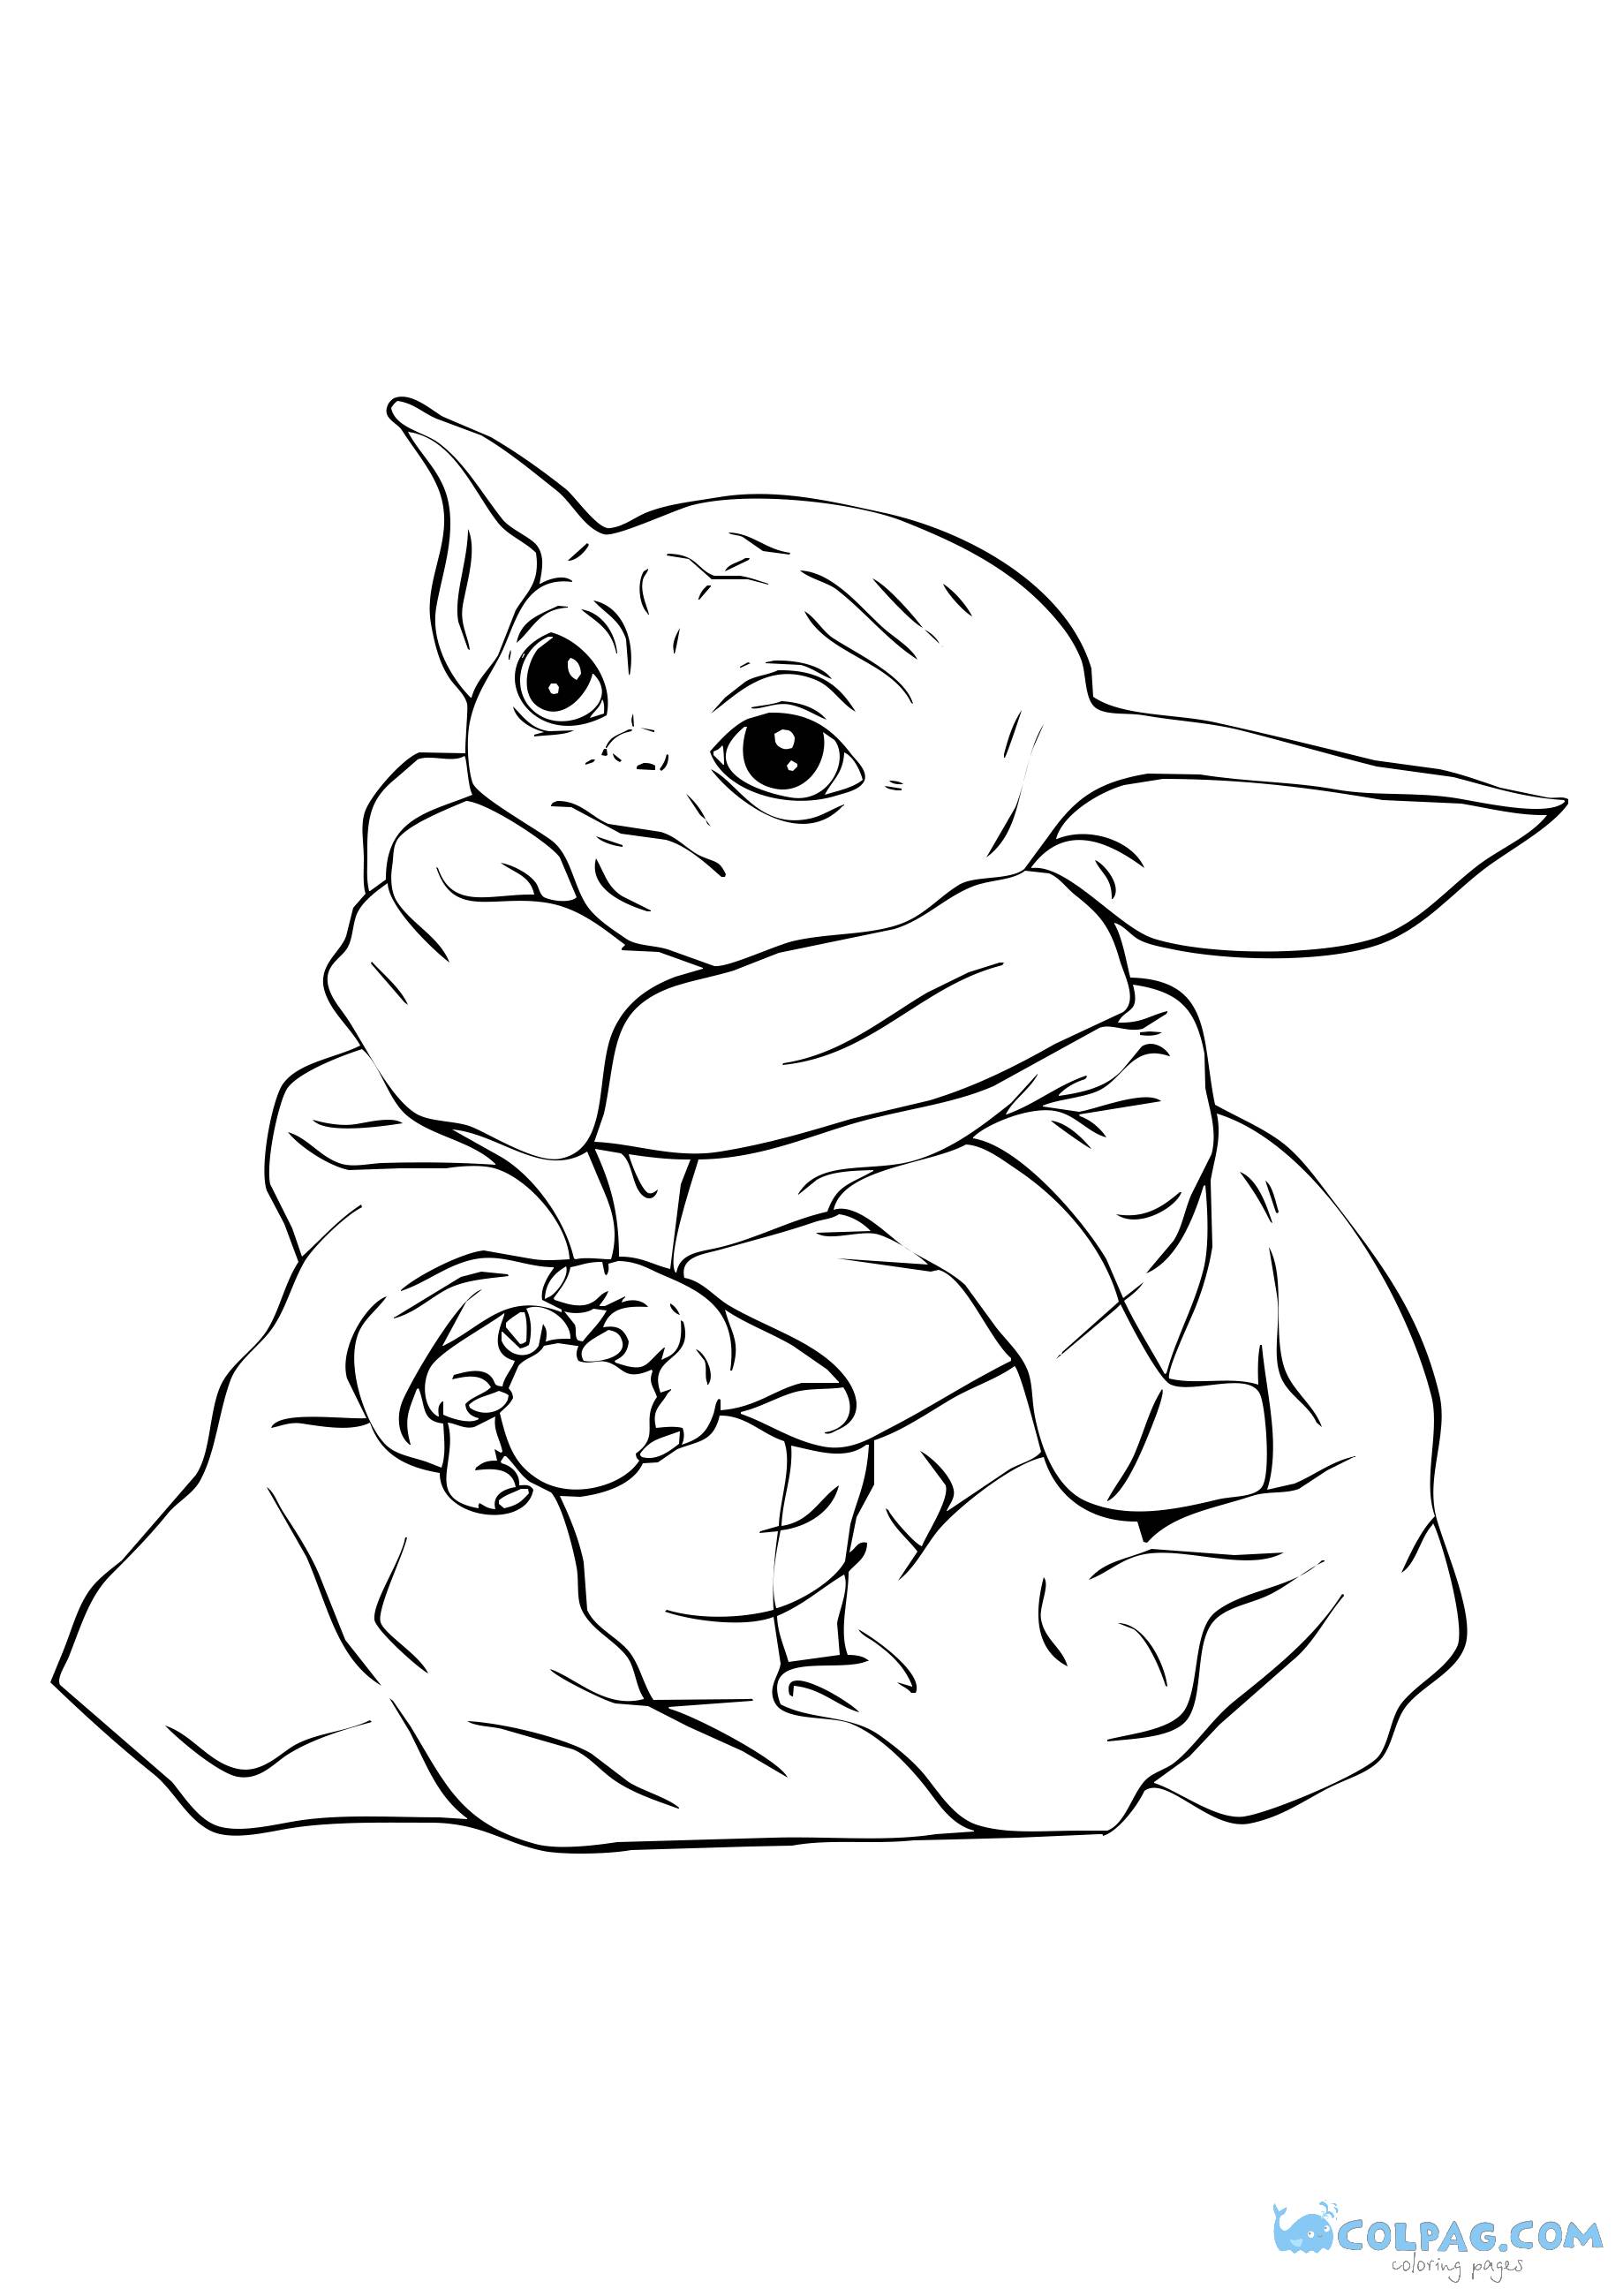 Bebé Yoda nuevos dibujos para colorear